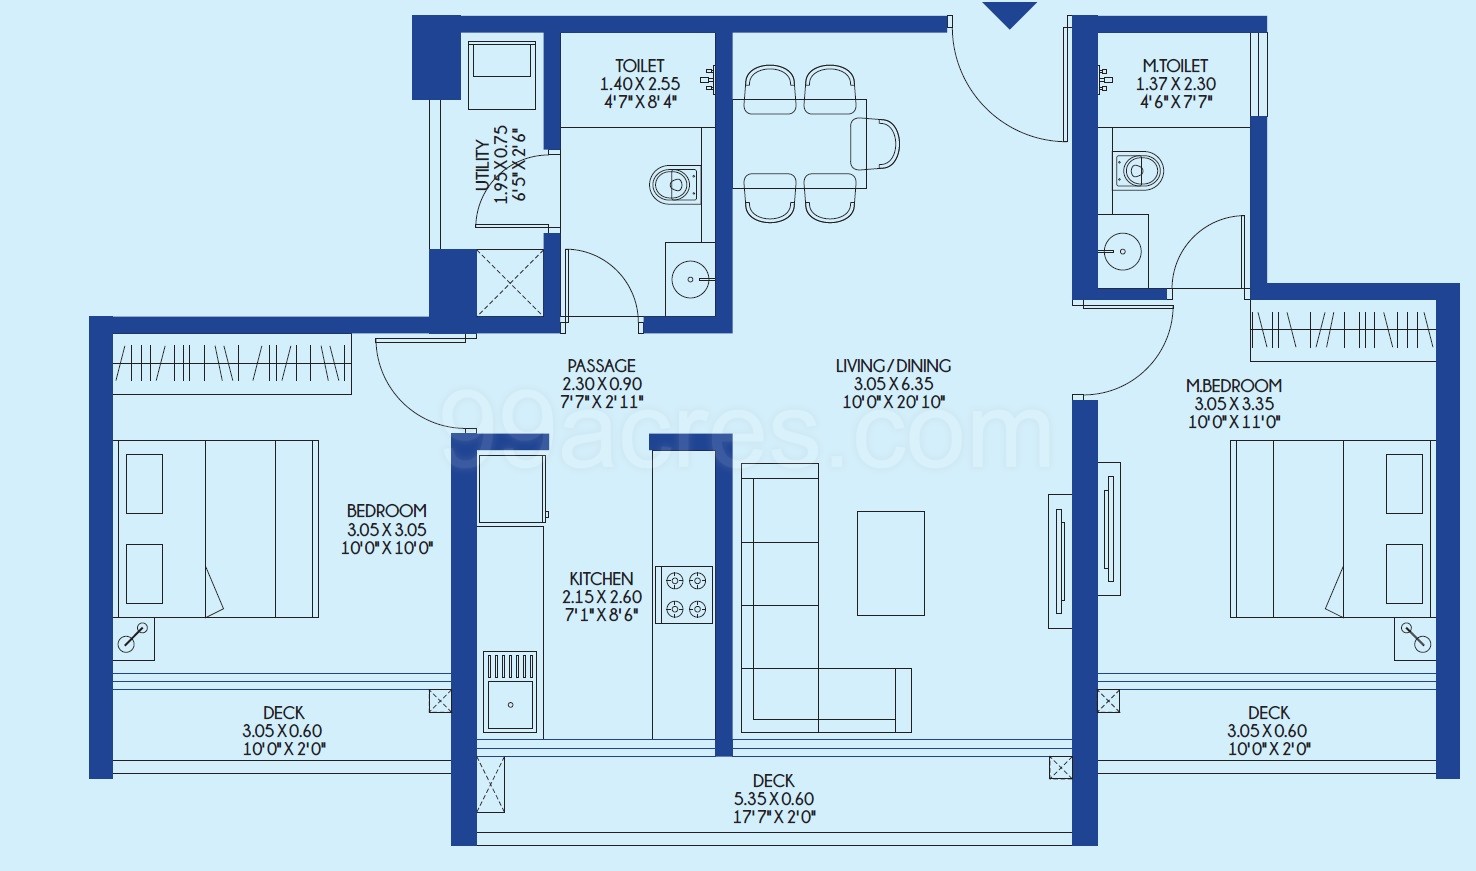 2 BHK Flat in Godrej Exquisite floor plan 724 sq.ft. (67.26 sq.m.)